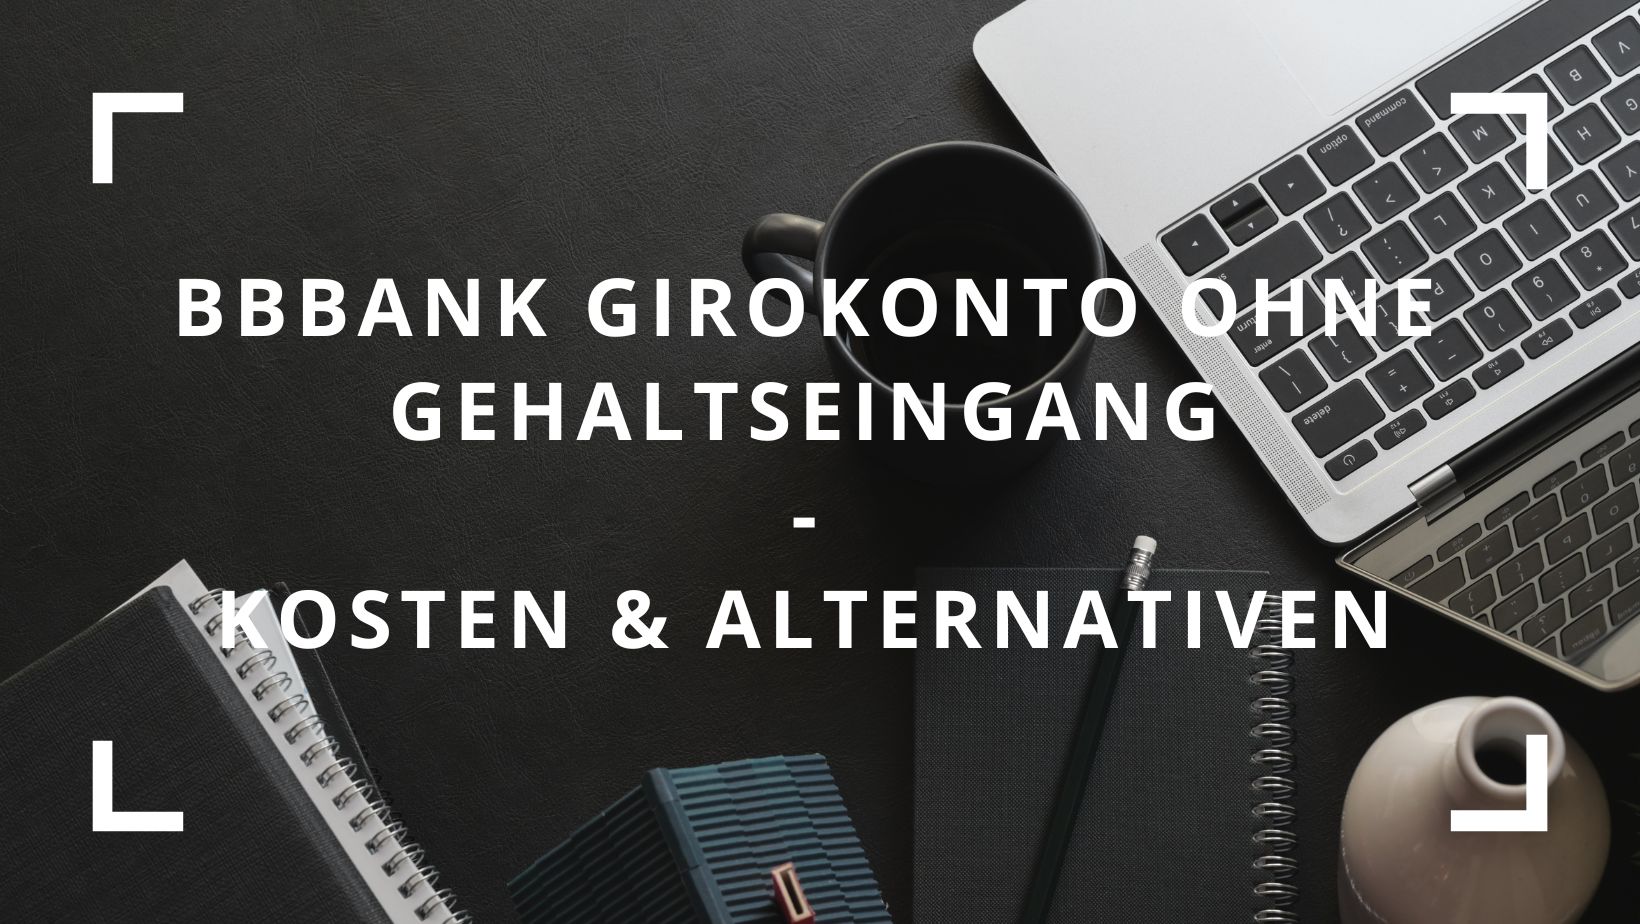 Titelbild zum Beitrag: "BBBank Girokonto ohne Gehaltseingang Kosten & Alternativen"